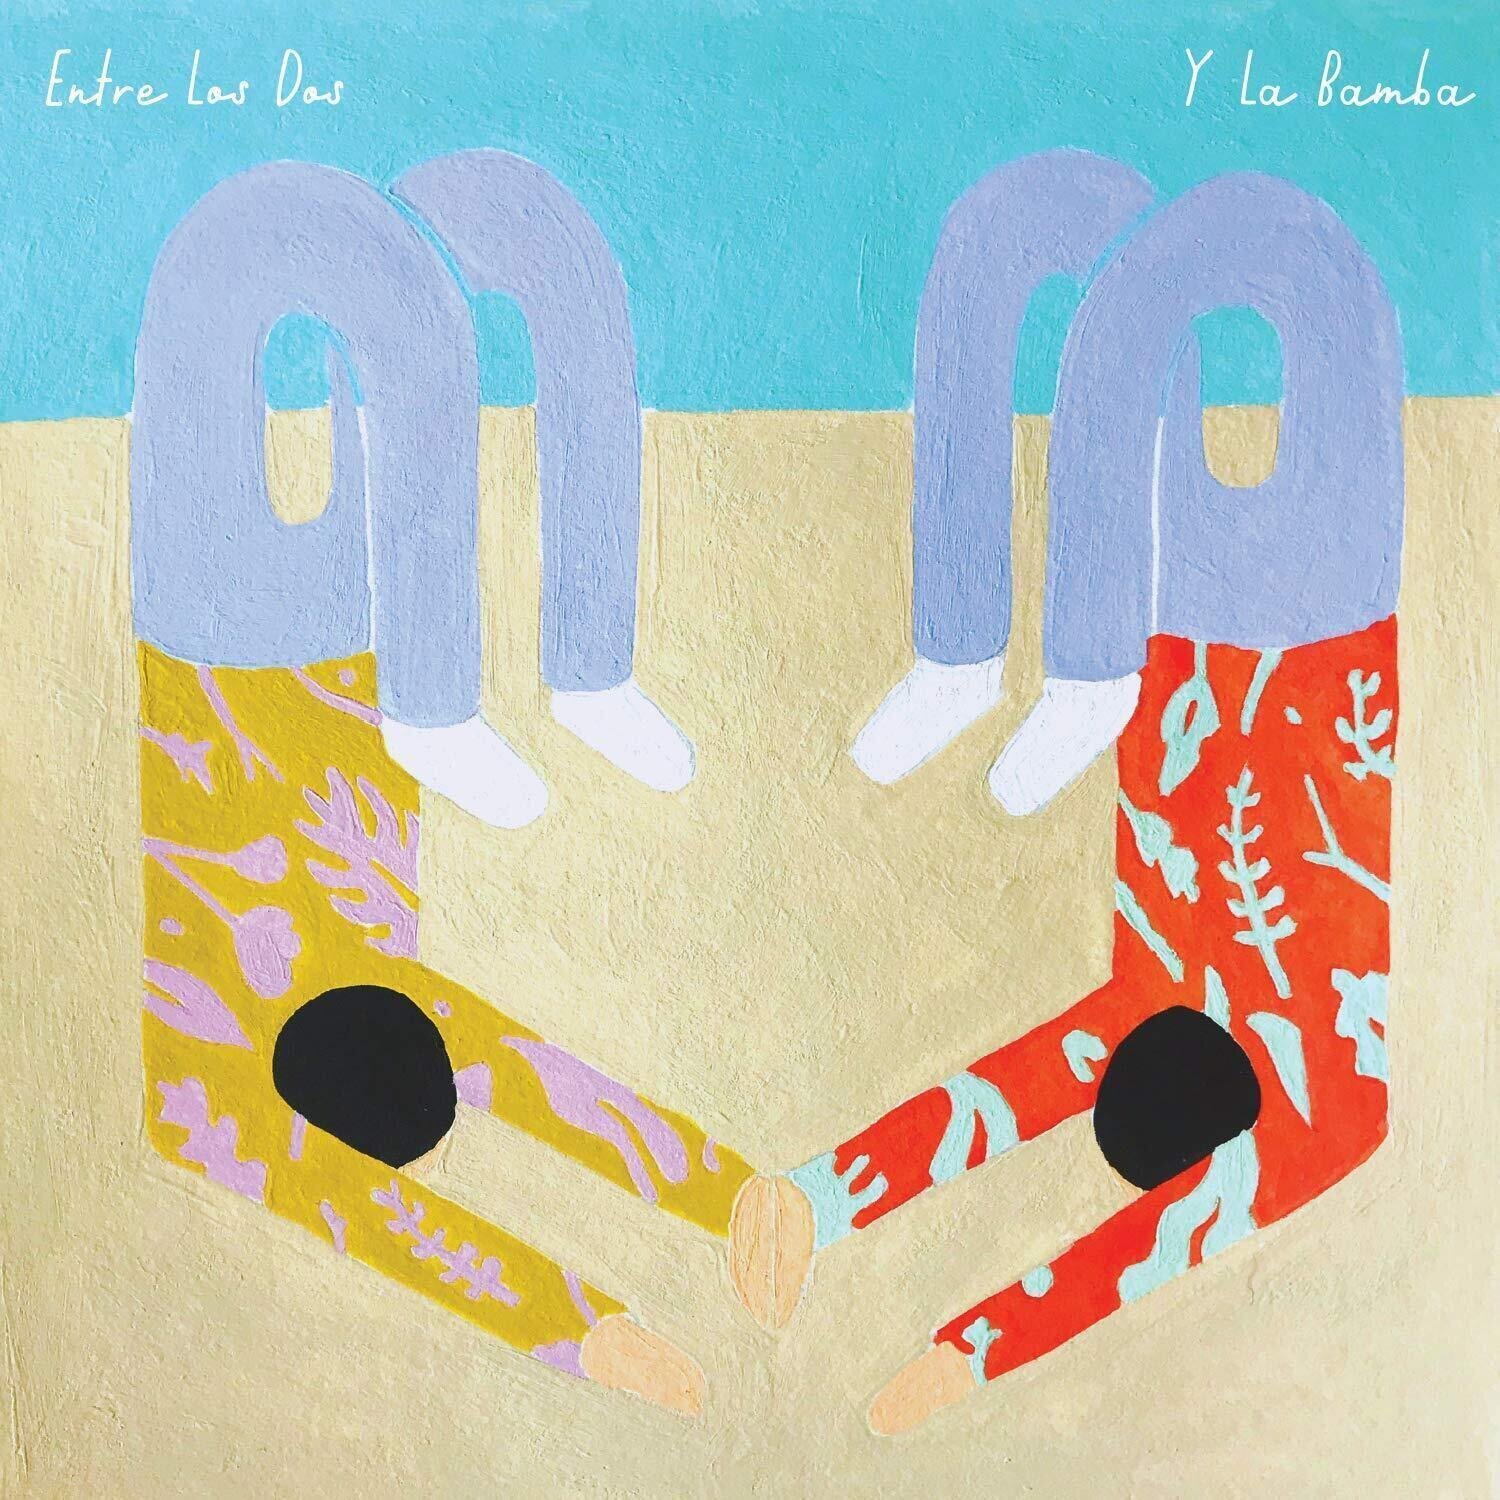 Vinylplade Y La Bamba - Entre Los Dos (10" Vinyl)